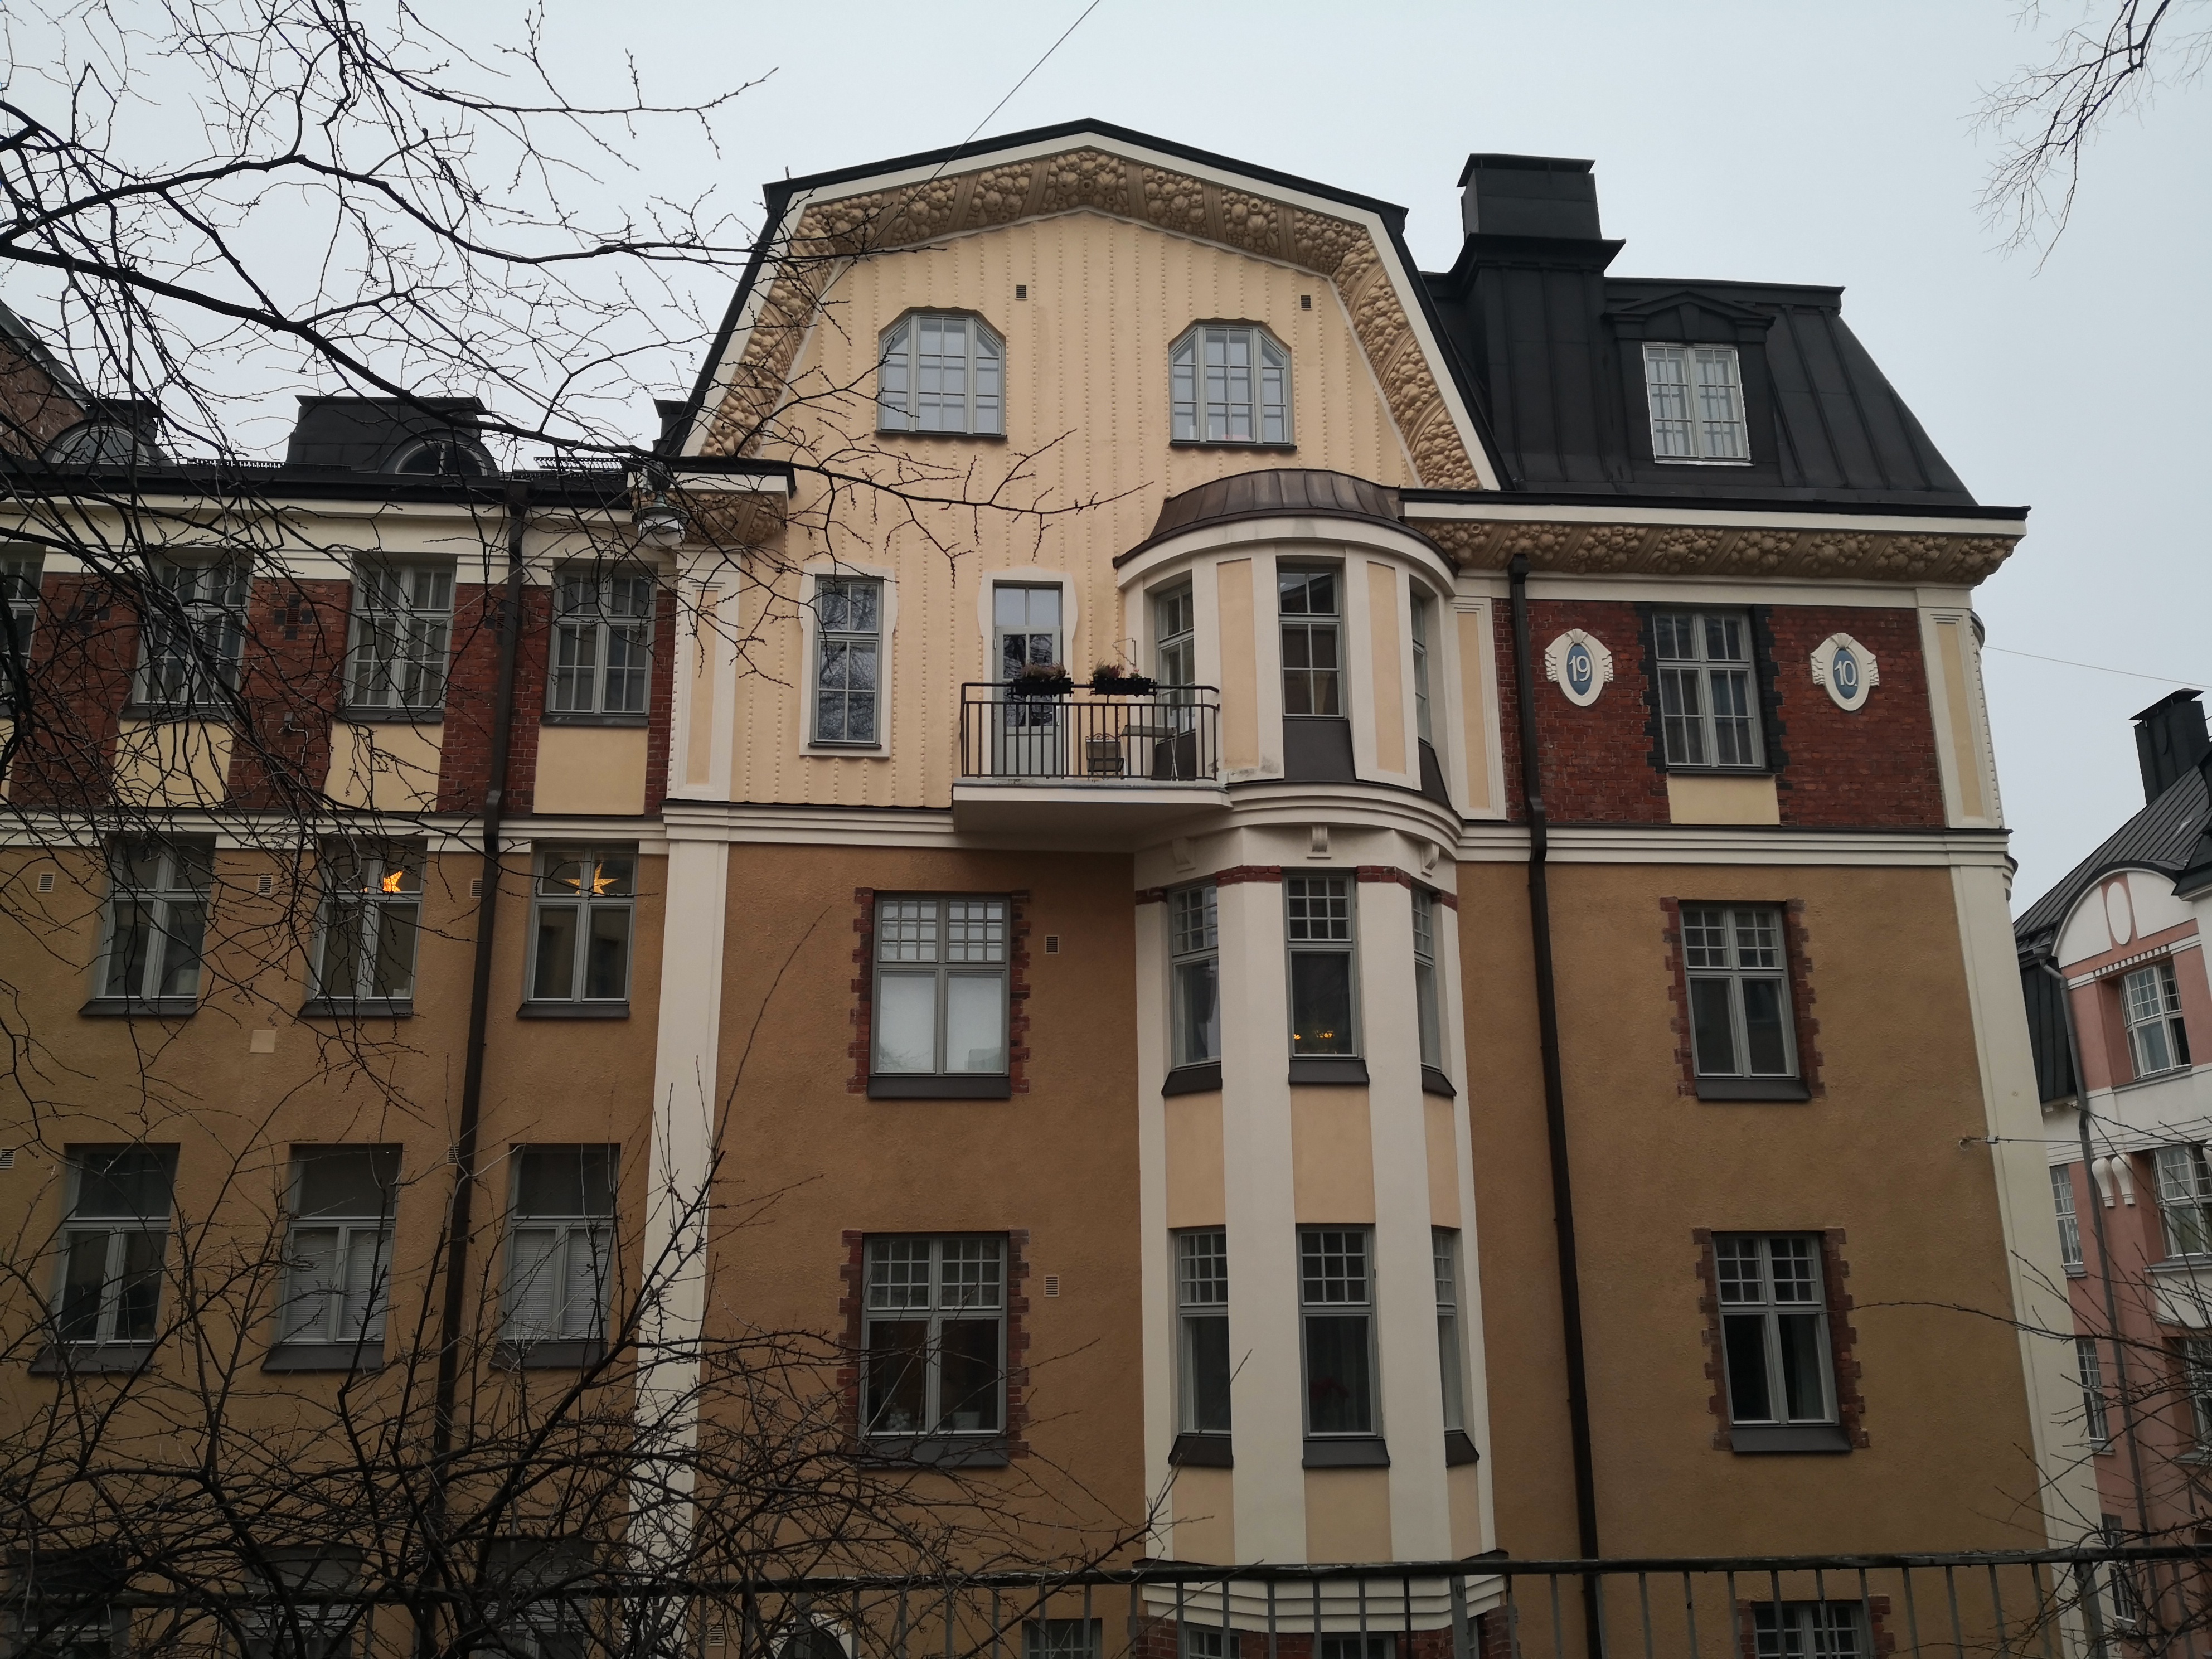 Kristianinkatu 7. Oiva Kallion 1910 suunnitelmien mukaan toteutettu 1880-luvun alussa rakennetun matalan kivitalon laajentaminen ja muodistaminen. Julkisivun yksityiskohtia. rephoto